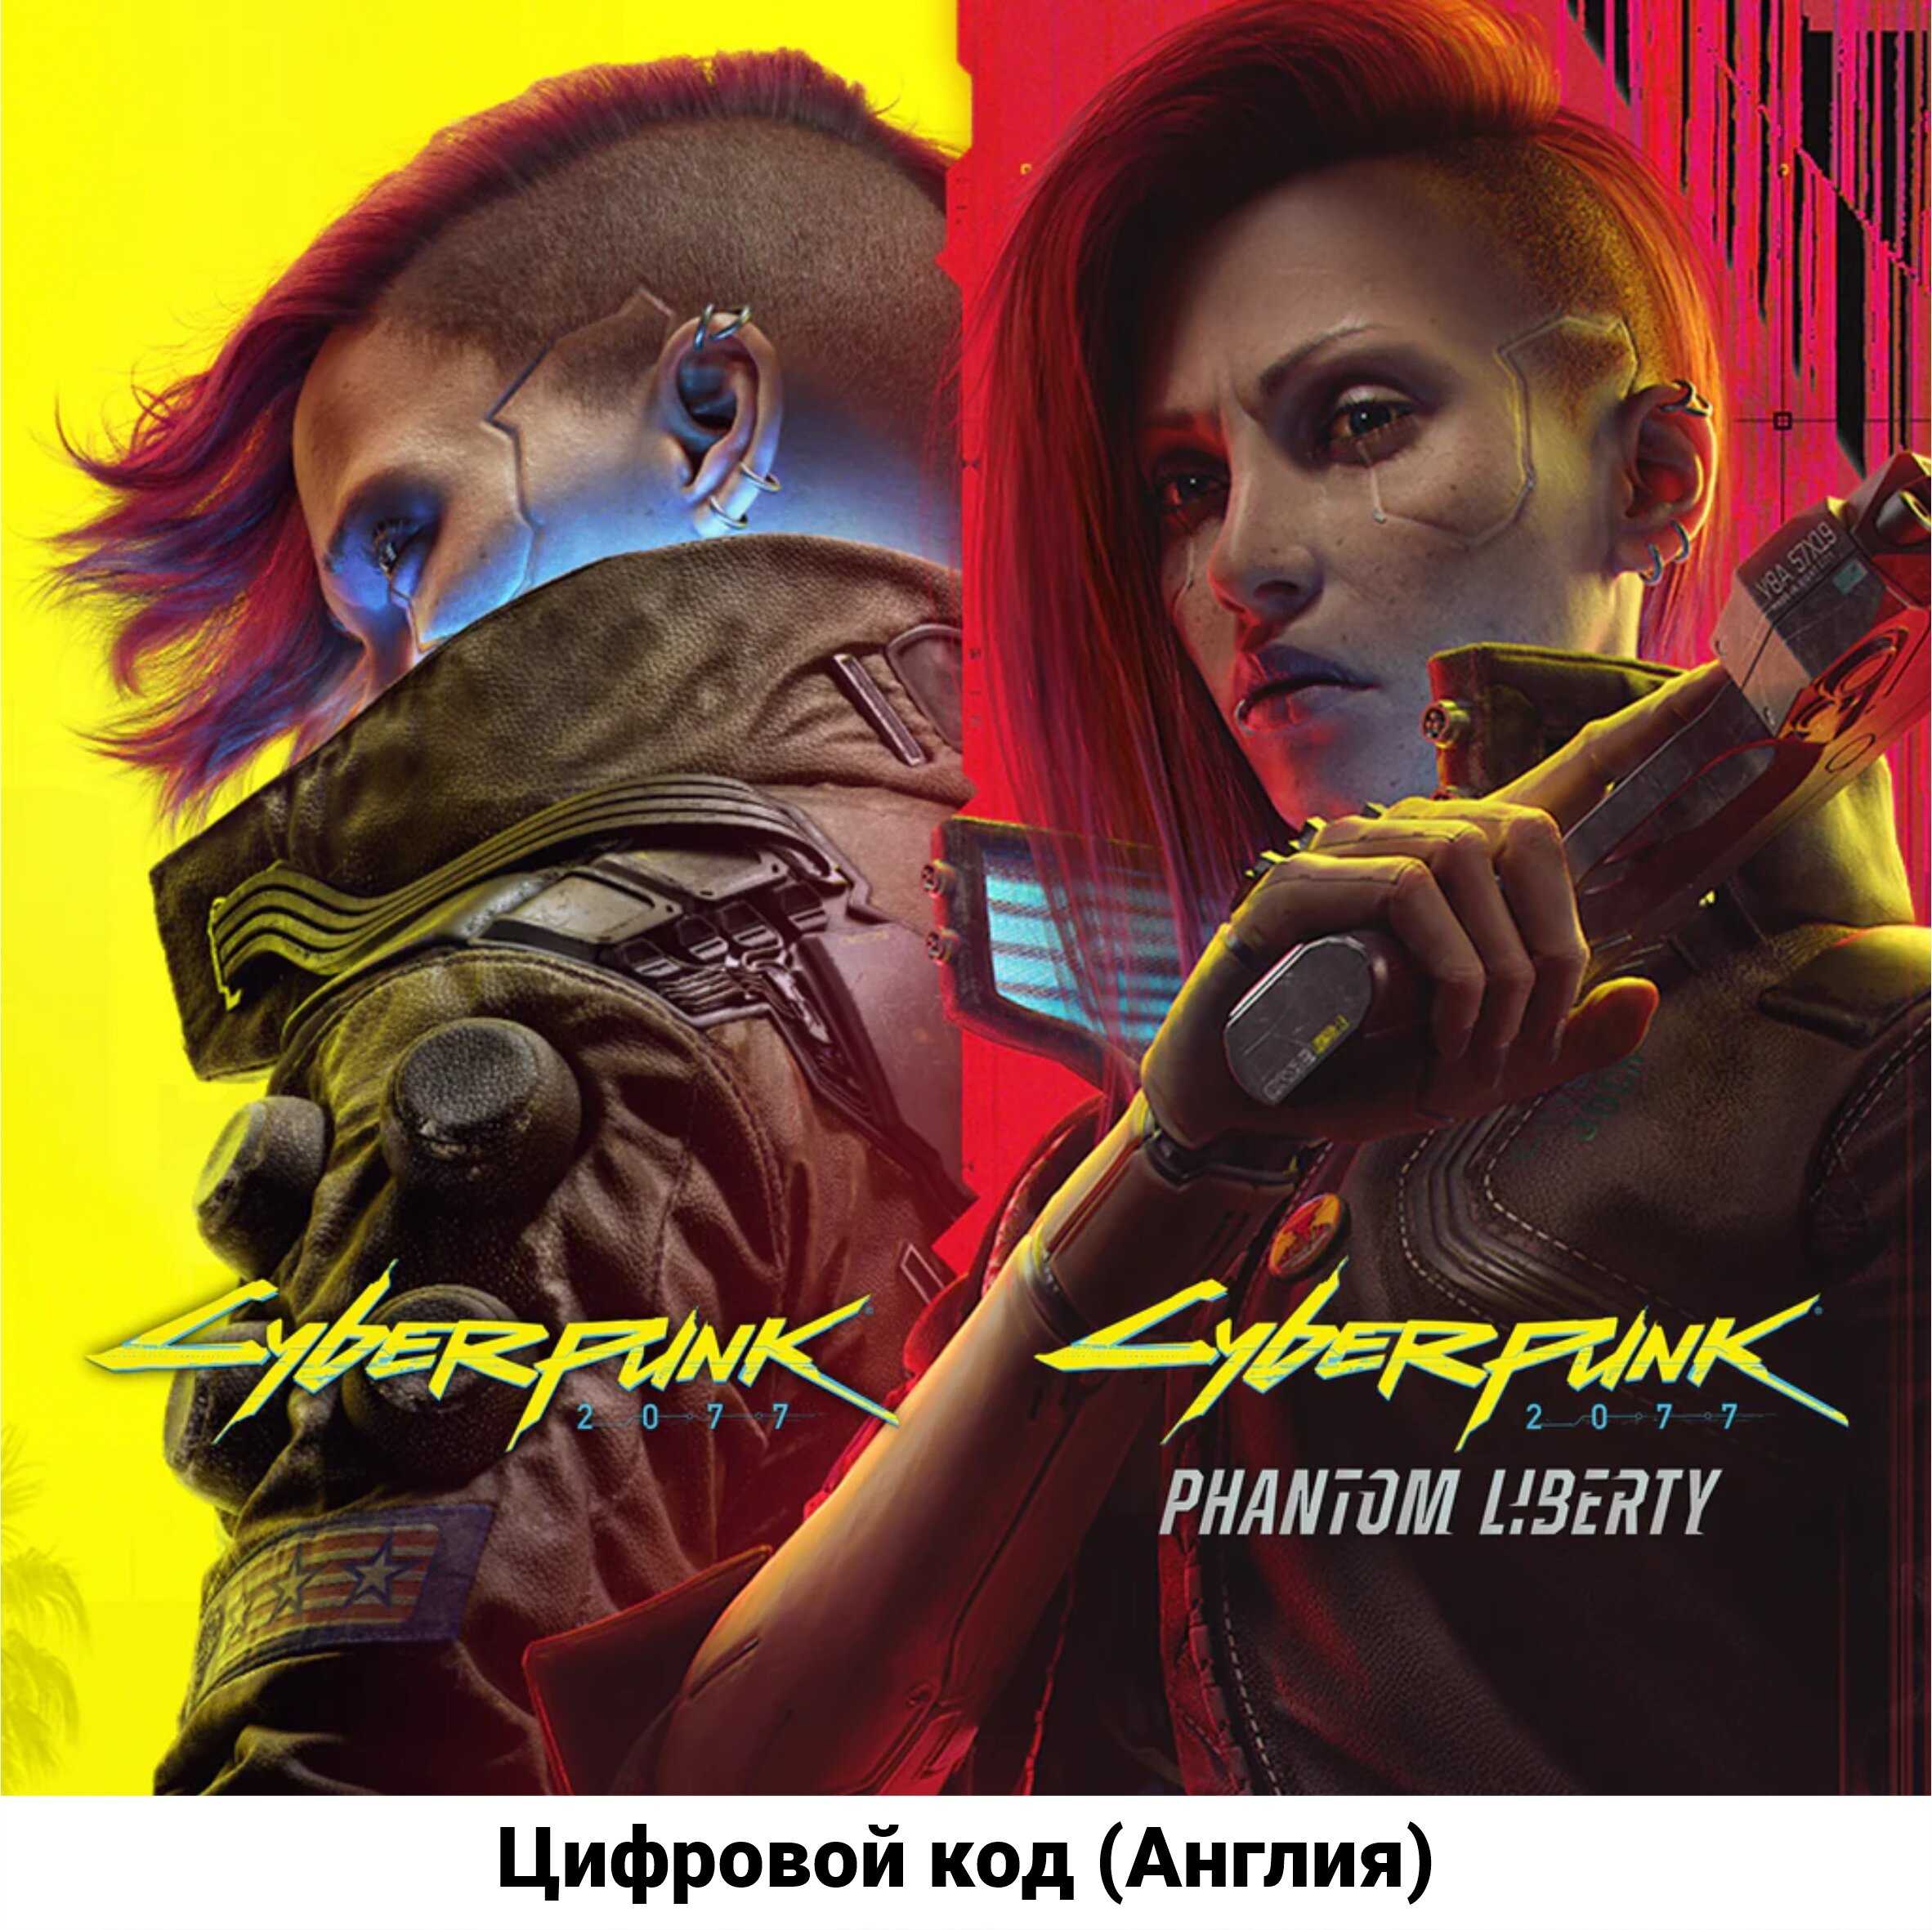 Cyberpunk 2077 Standard Edition на PS4/PS5 (русская озвучка) (Цифровой код Англия)